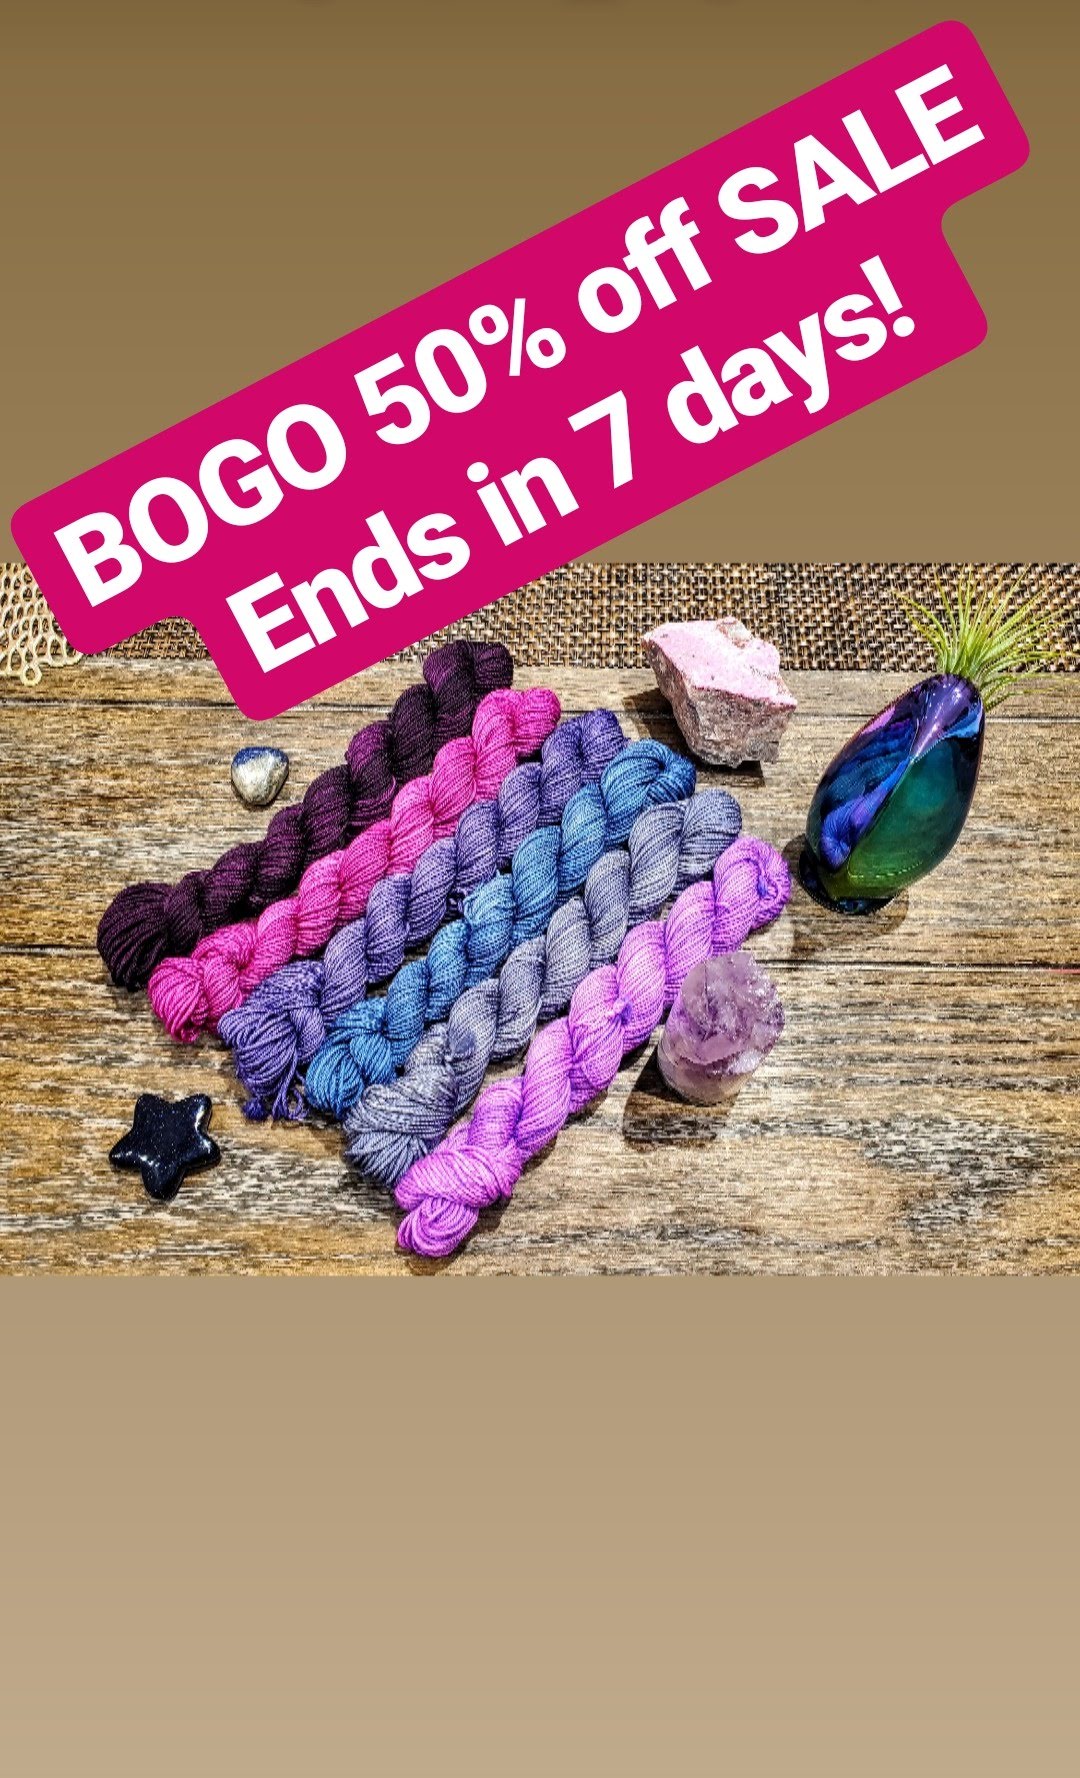 BOGO 50% off SALE ends Friday!